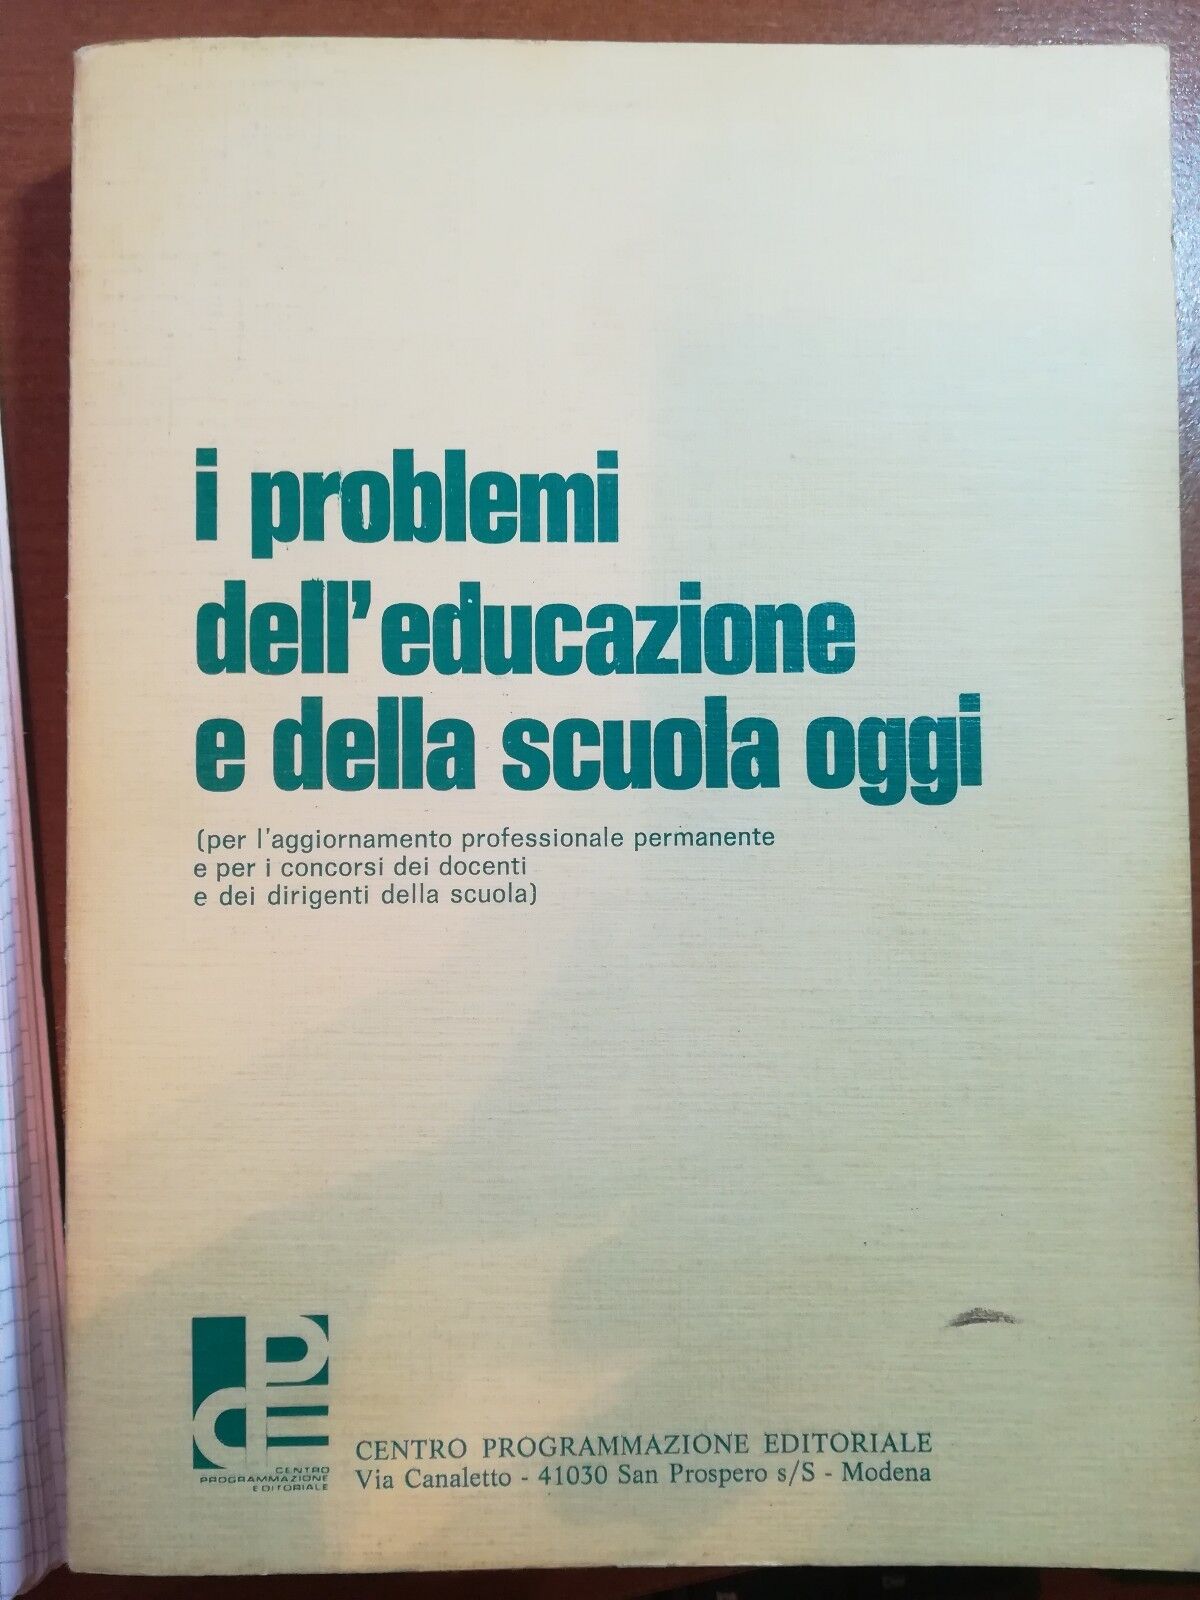 I problemi dell'eucazione e della scuola oggi -Barali Ercole-C.P.E. - 1979 - M